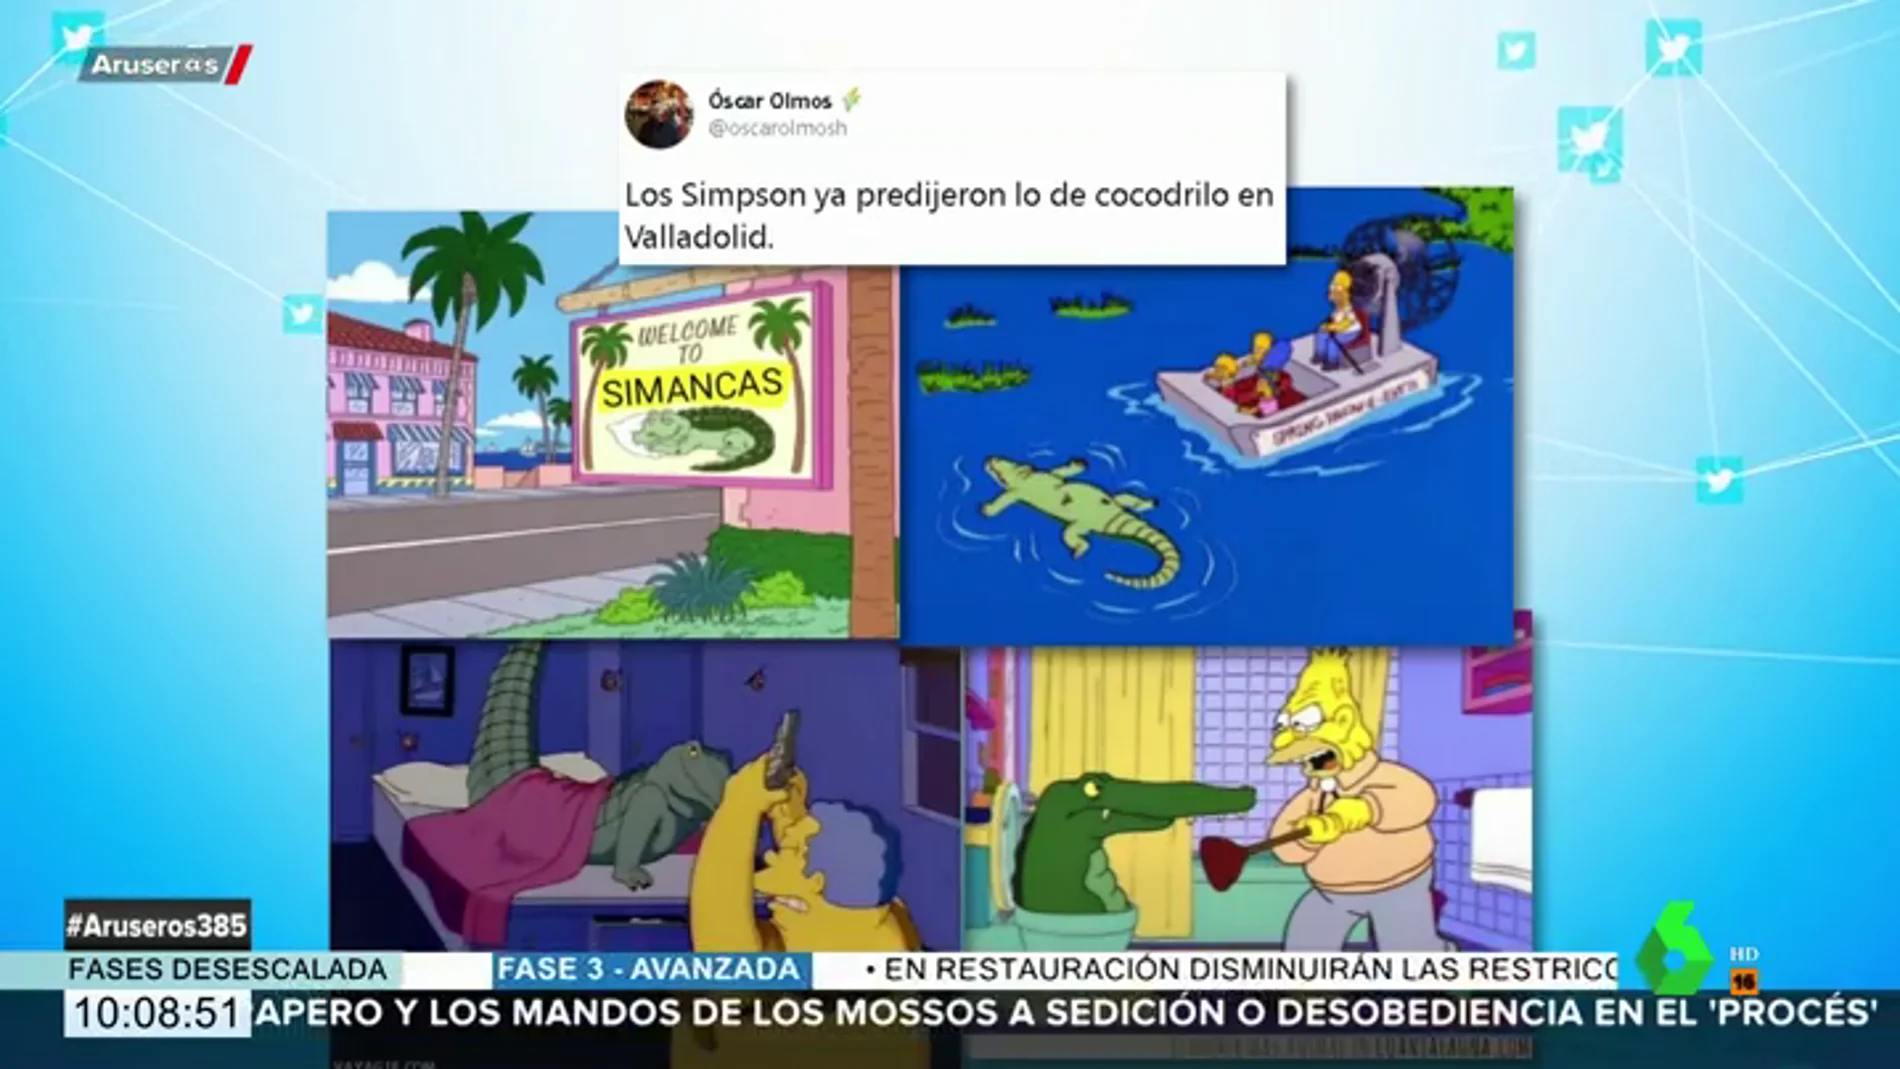 Los Simpson ya predijeron lo del cocodrilo de Valladolid